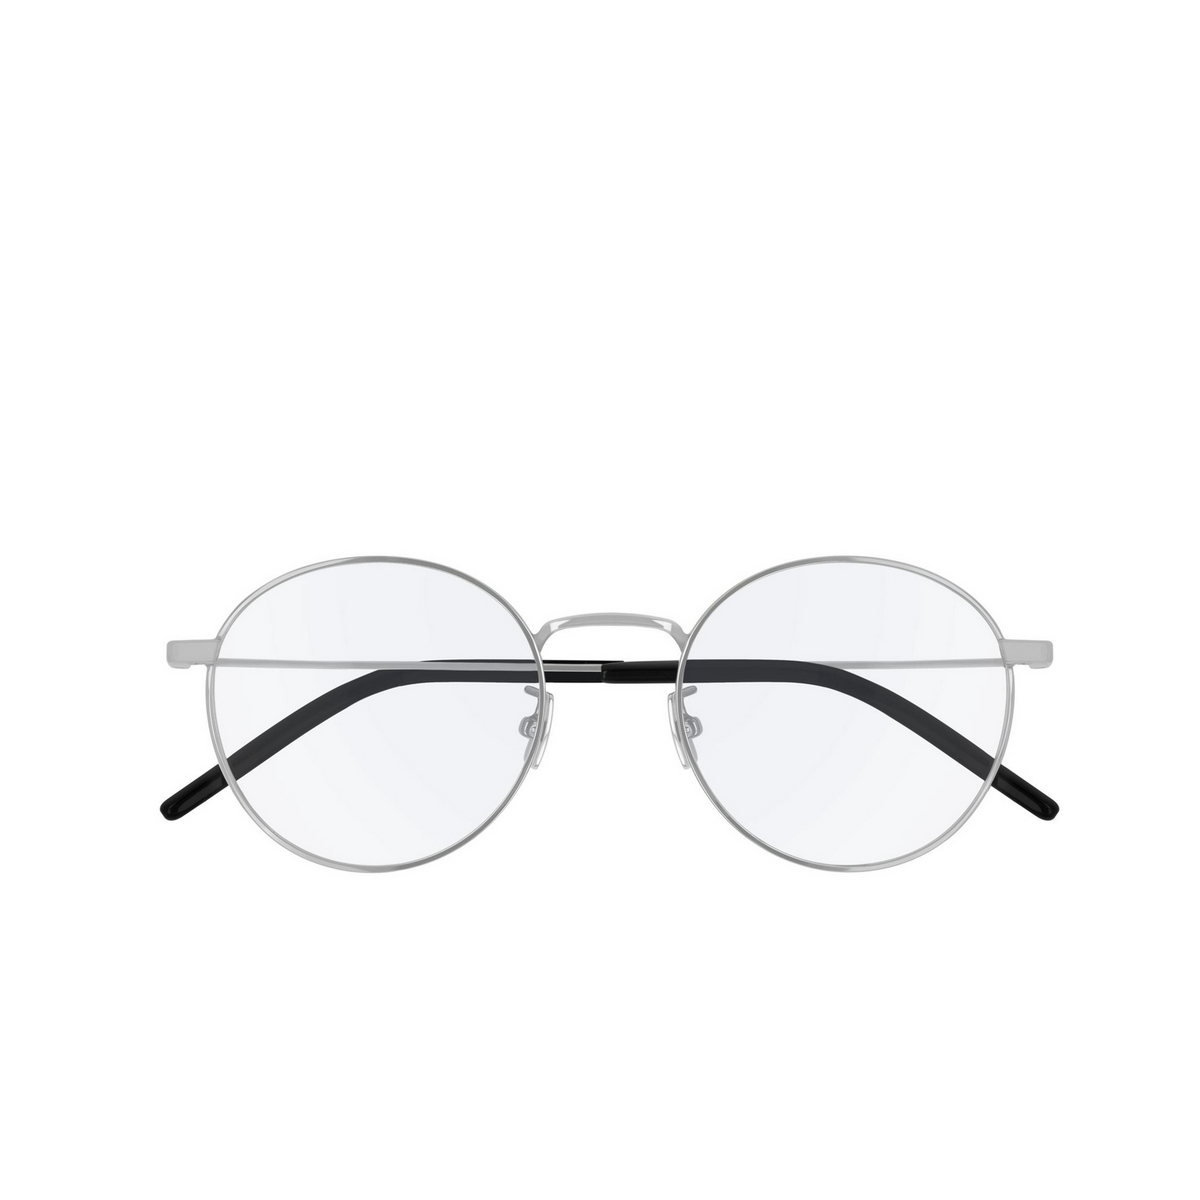 Saint Laurent® Round Eyeglasses: SL 322 T color Silver 002 - 1/2.